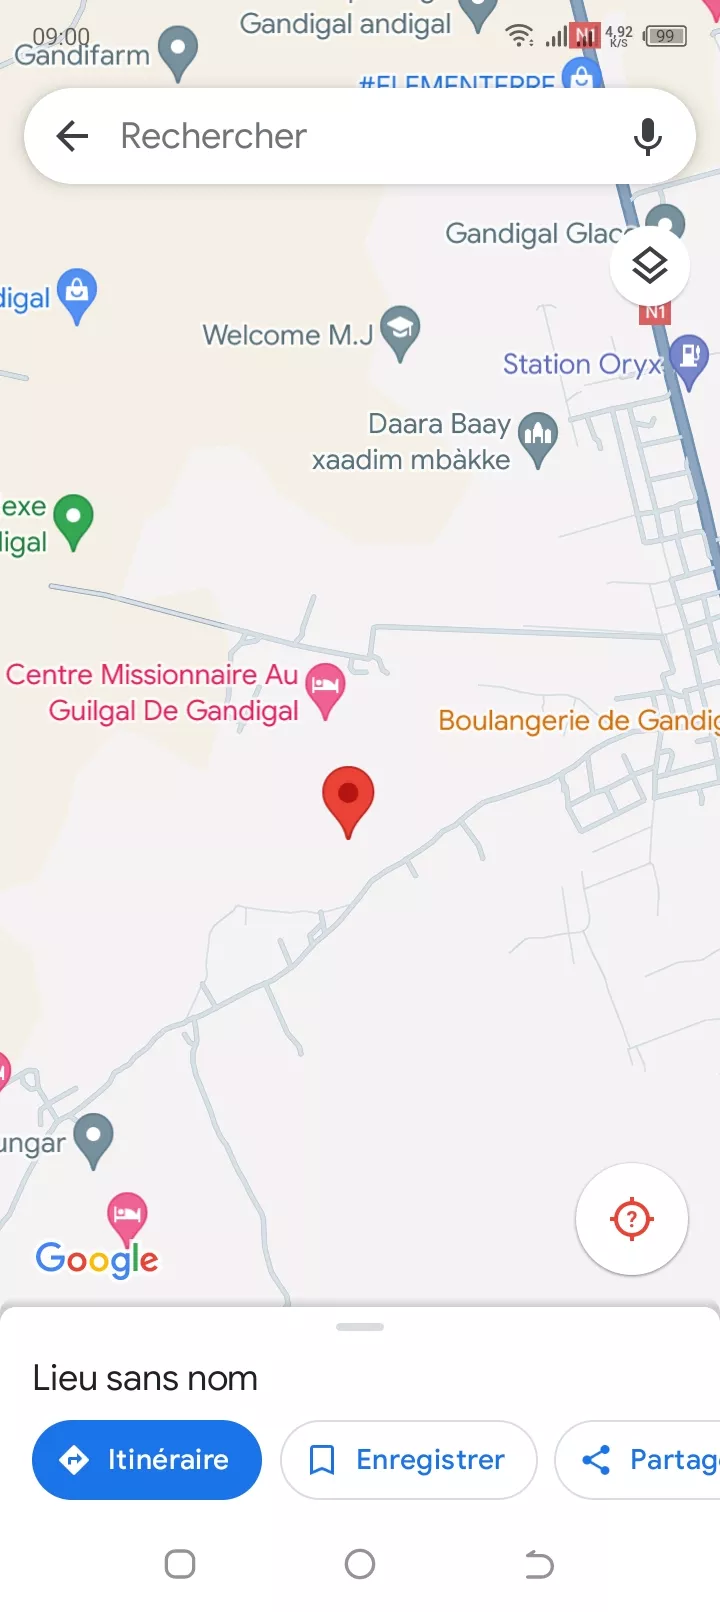 Terrain 225 mètres carrés à Saly à 6000000 - Petites annonces gratuites - Achat et vente à Mbour, Sénégal